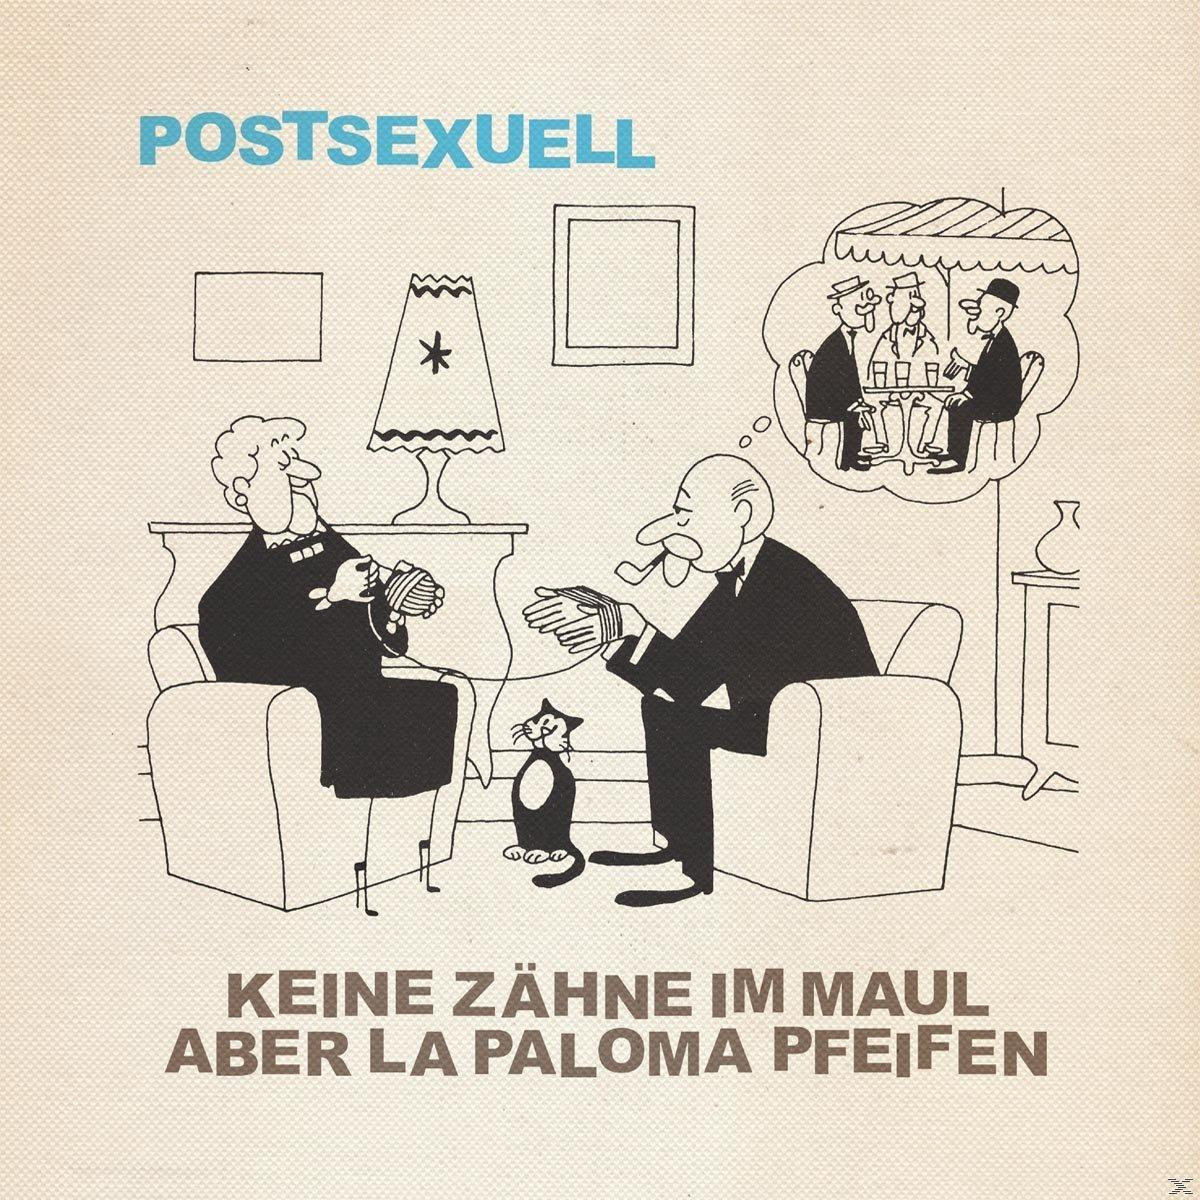 - (Vinyl) La Zähne Keine Aber Maul Pfeifen - Paloma Im Postsexuell